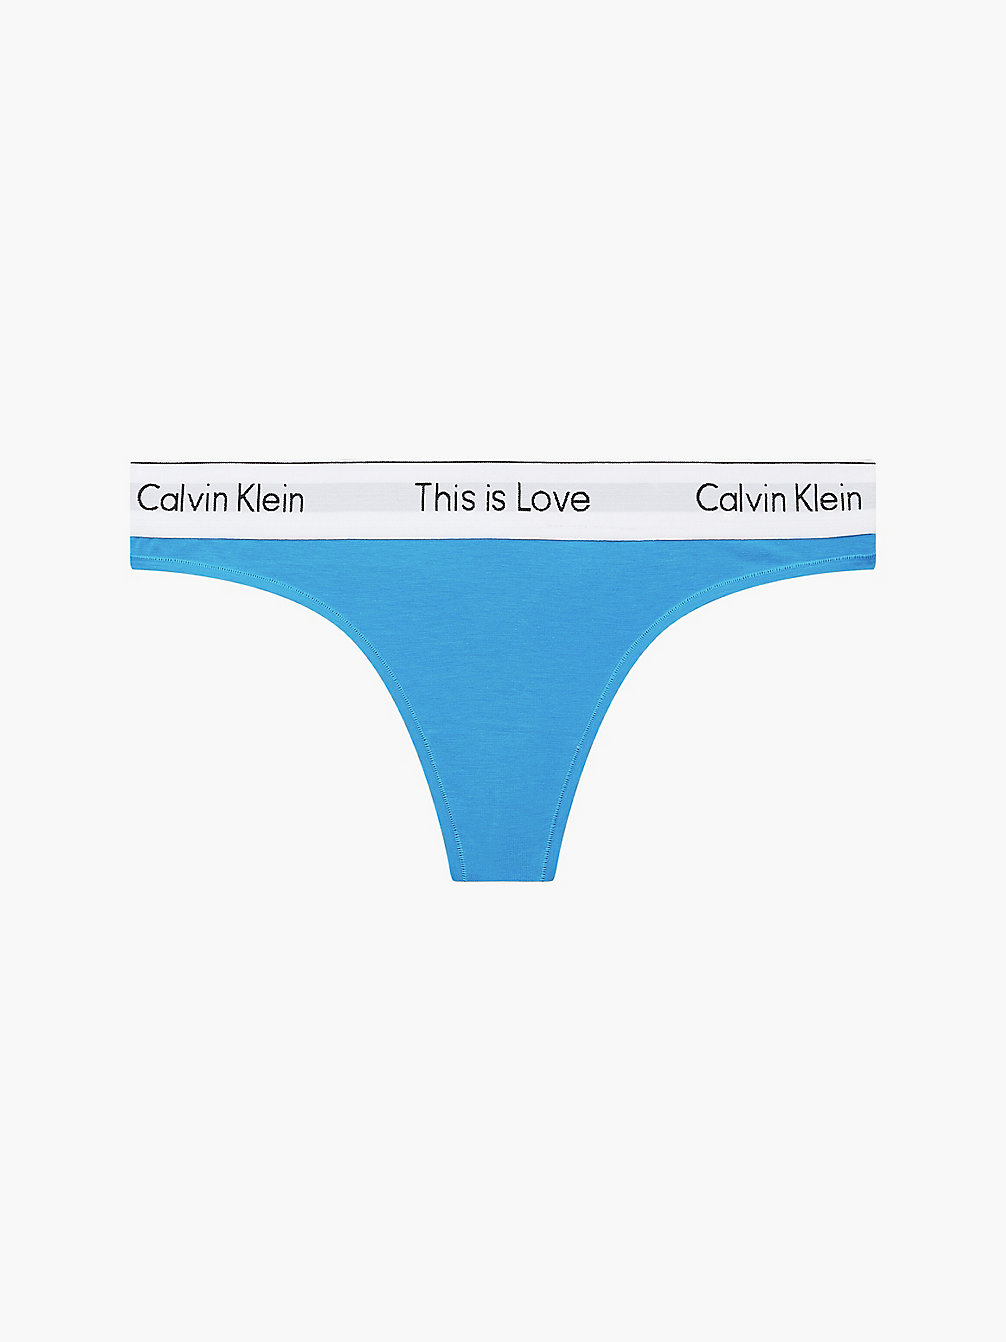 DEEP SKY BLUE > String - Pride > undefined Damen - Calvin Klein